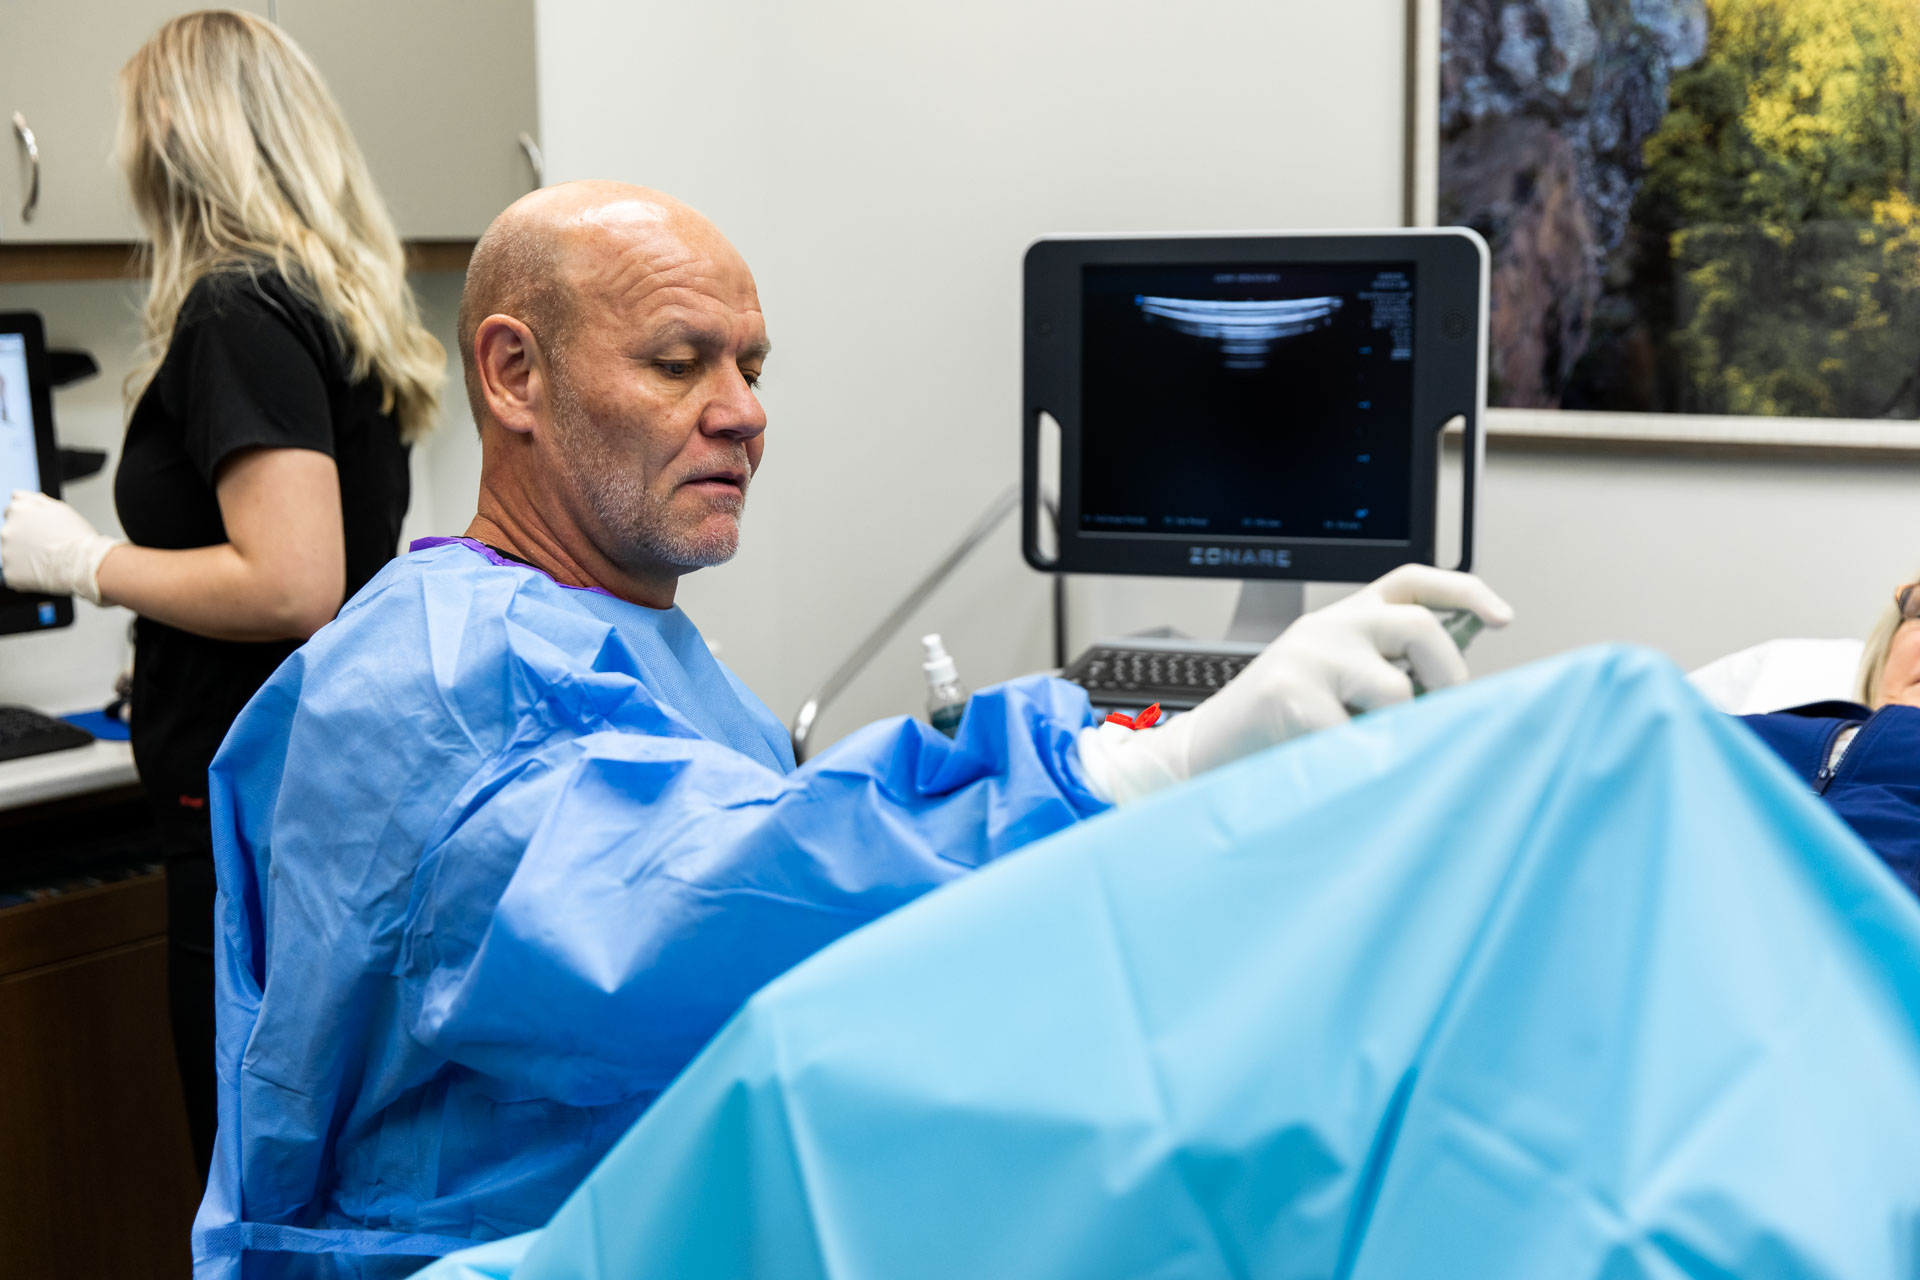 Vein and Artery Doctors in Rogers procedure